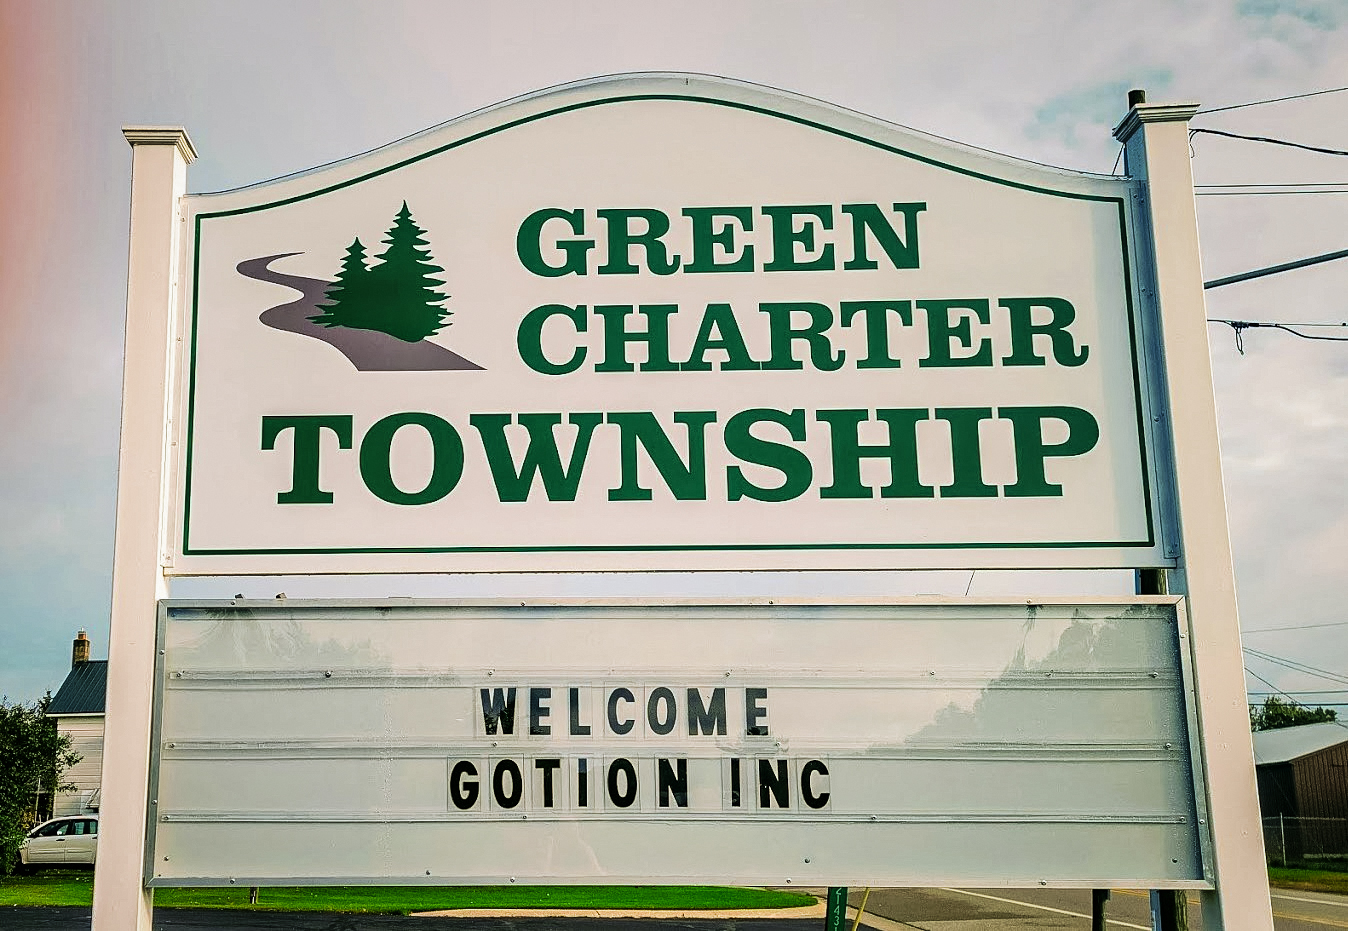 Cộng đồng Green Charter Township ở vùng nông thôn Michigan đã triệu tập các thành viên hội đồng thị trấn hồi tháng Mười Một để phản đối một đề nghị xây dựng nhà máy pin Gotion. (Ảnh: Được đăng dưới sự cho phép của ông Jim Chapman)